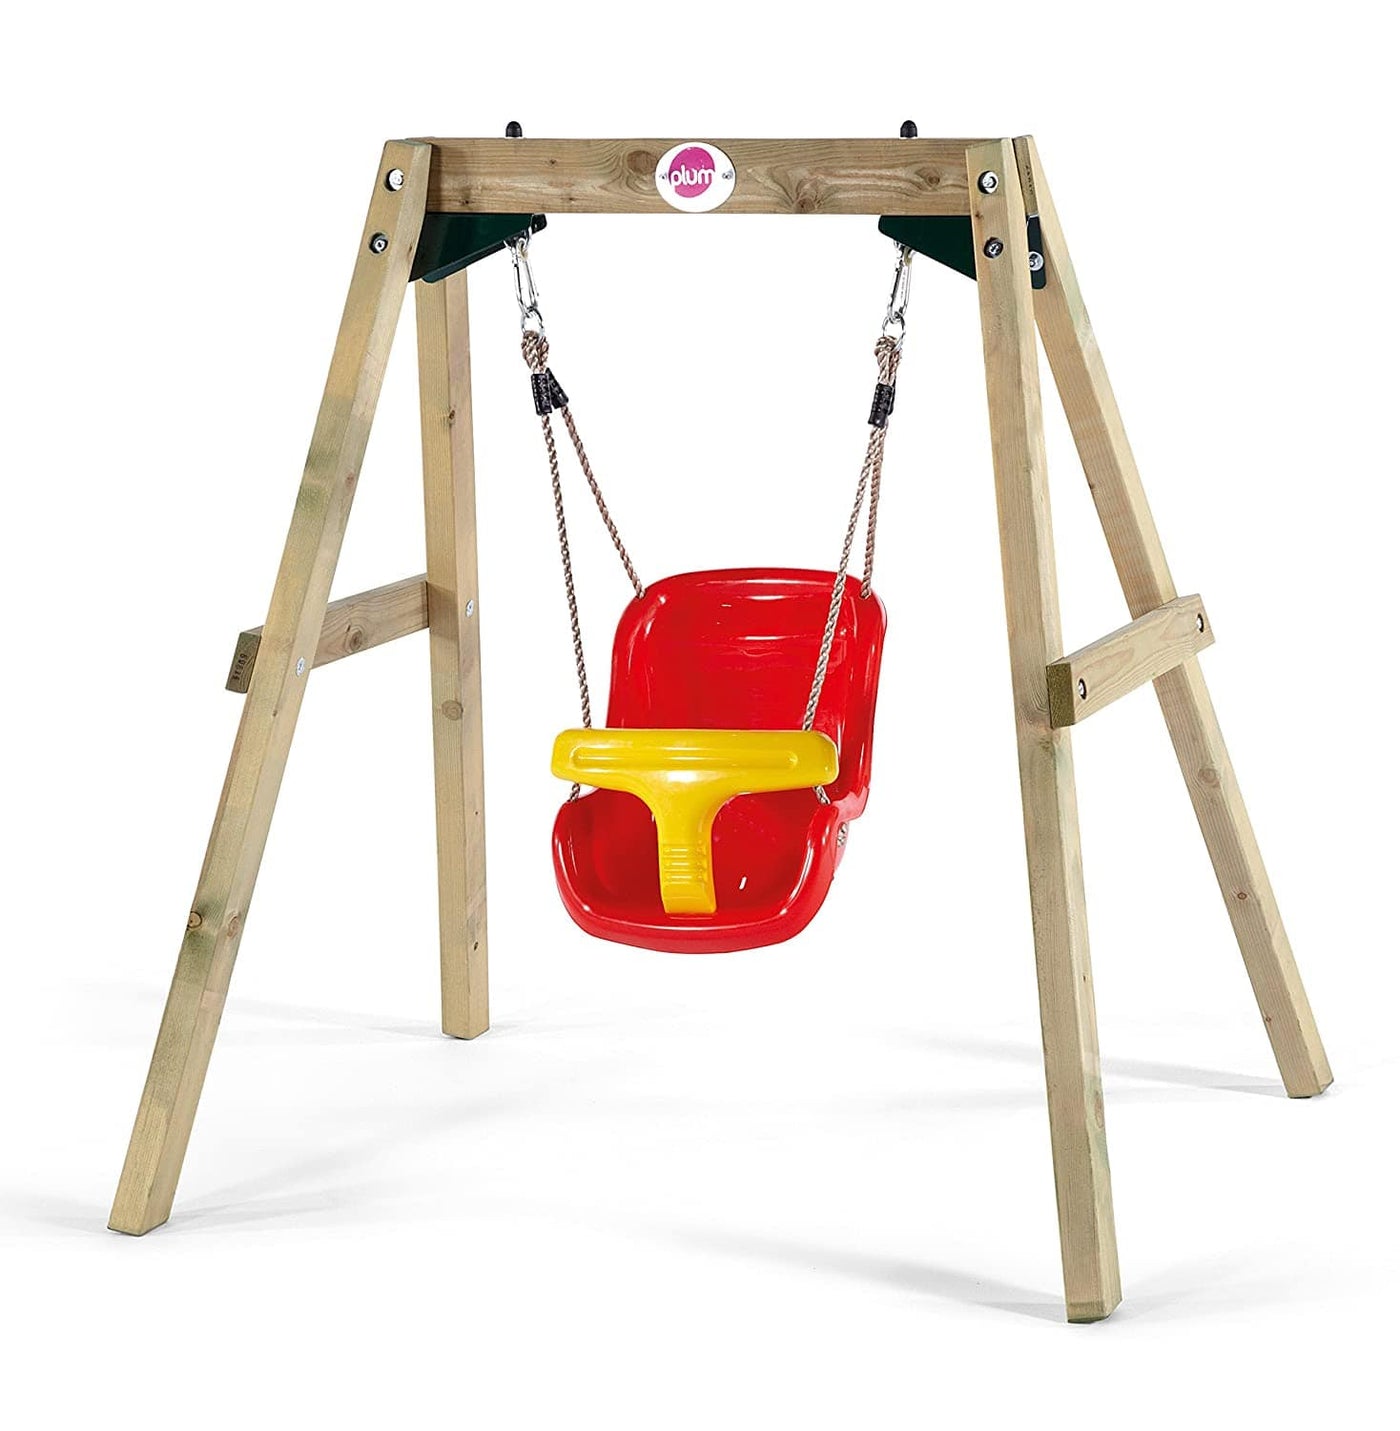 Wooden Baby Swing Set | Plum® by Plum, UK Indoor & Outdoor Play Equipments